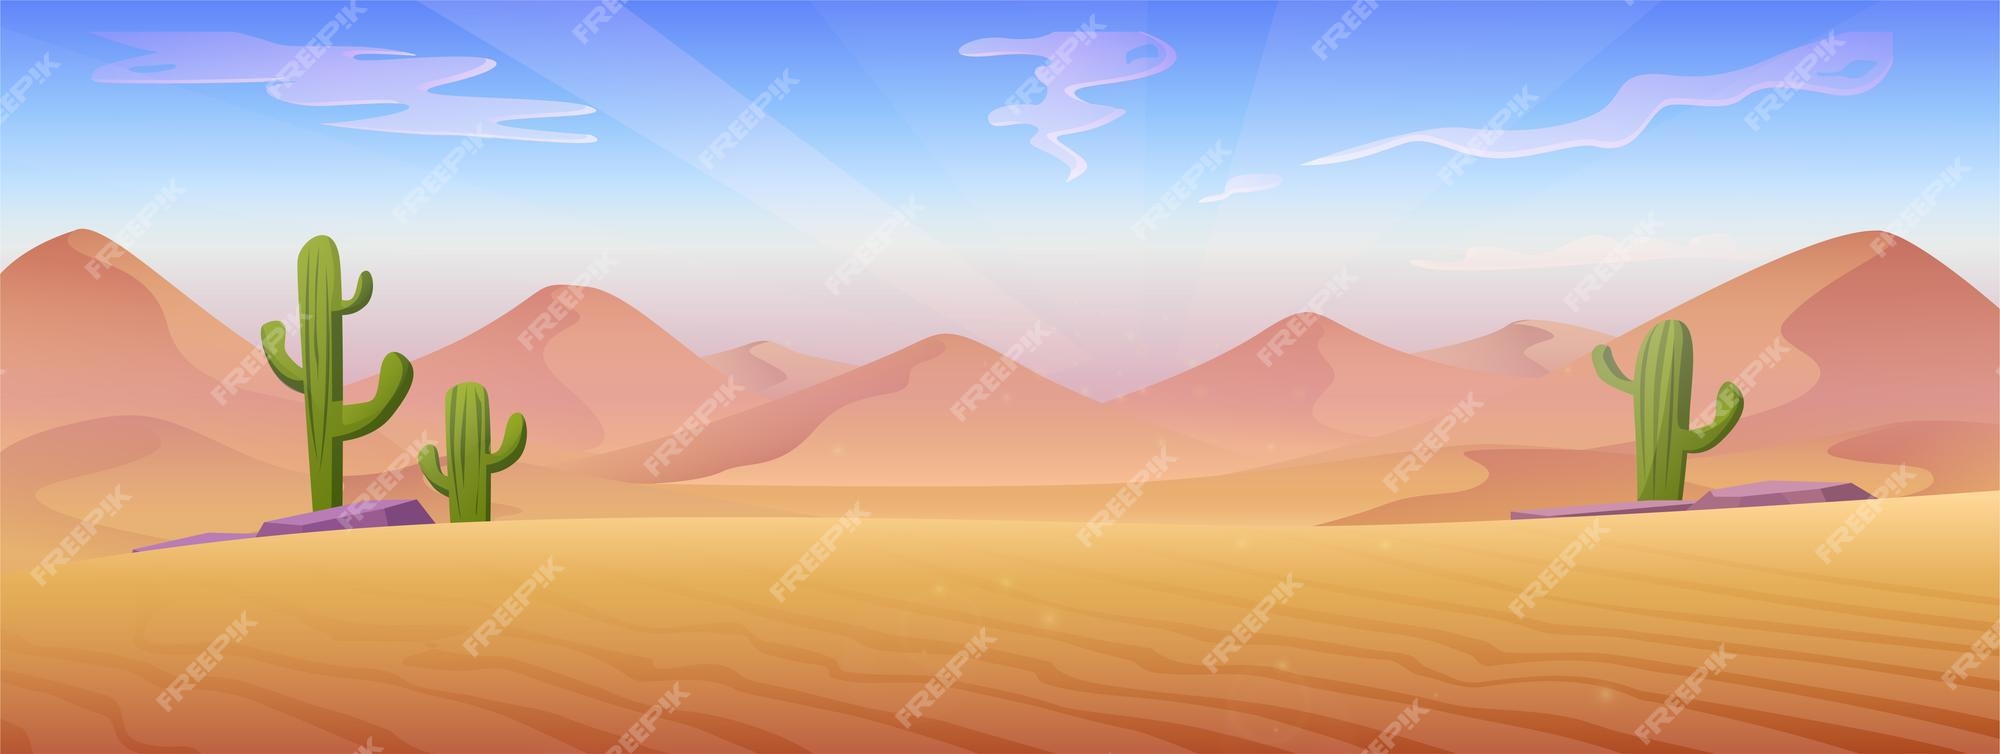 Hình ảnh sa mạc hoạt hình miễn phí tải xuống mang lại cho bạn một cảm giác xao xuyến, ấn tượng. Các chi tiết được minh hoạ rõ nét, những vùng đất sa mạc trải dài với những đồi cát ấn tượng và những cộng đồng động vật hoang dã vô cùng đáng yêu. Hãy tải ngay để khám phá thế giới hoang dã này.